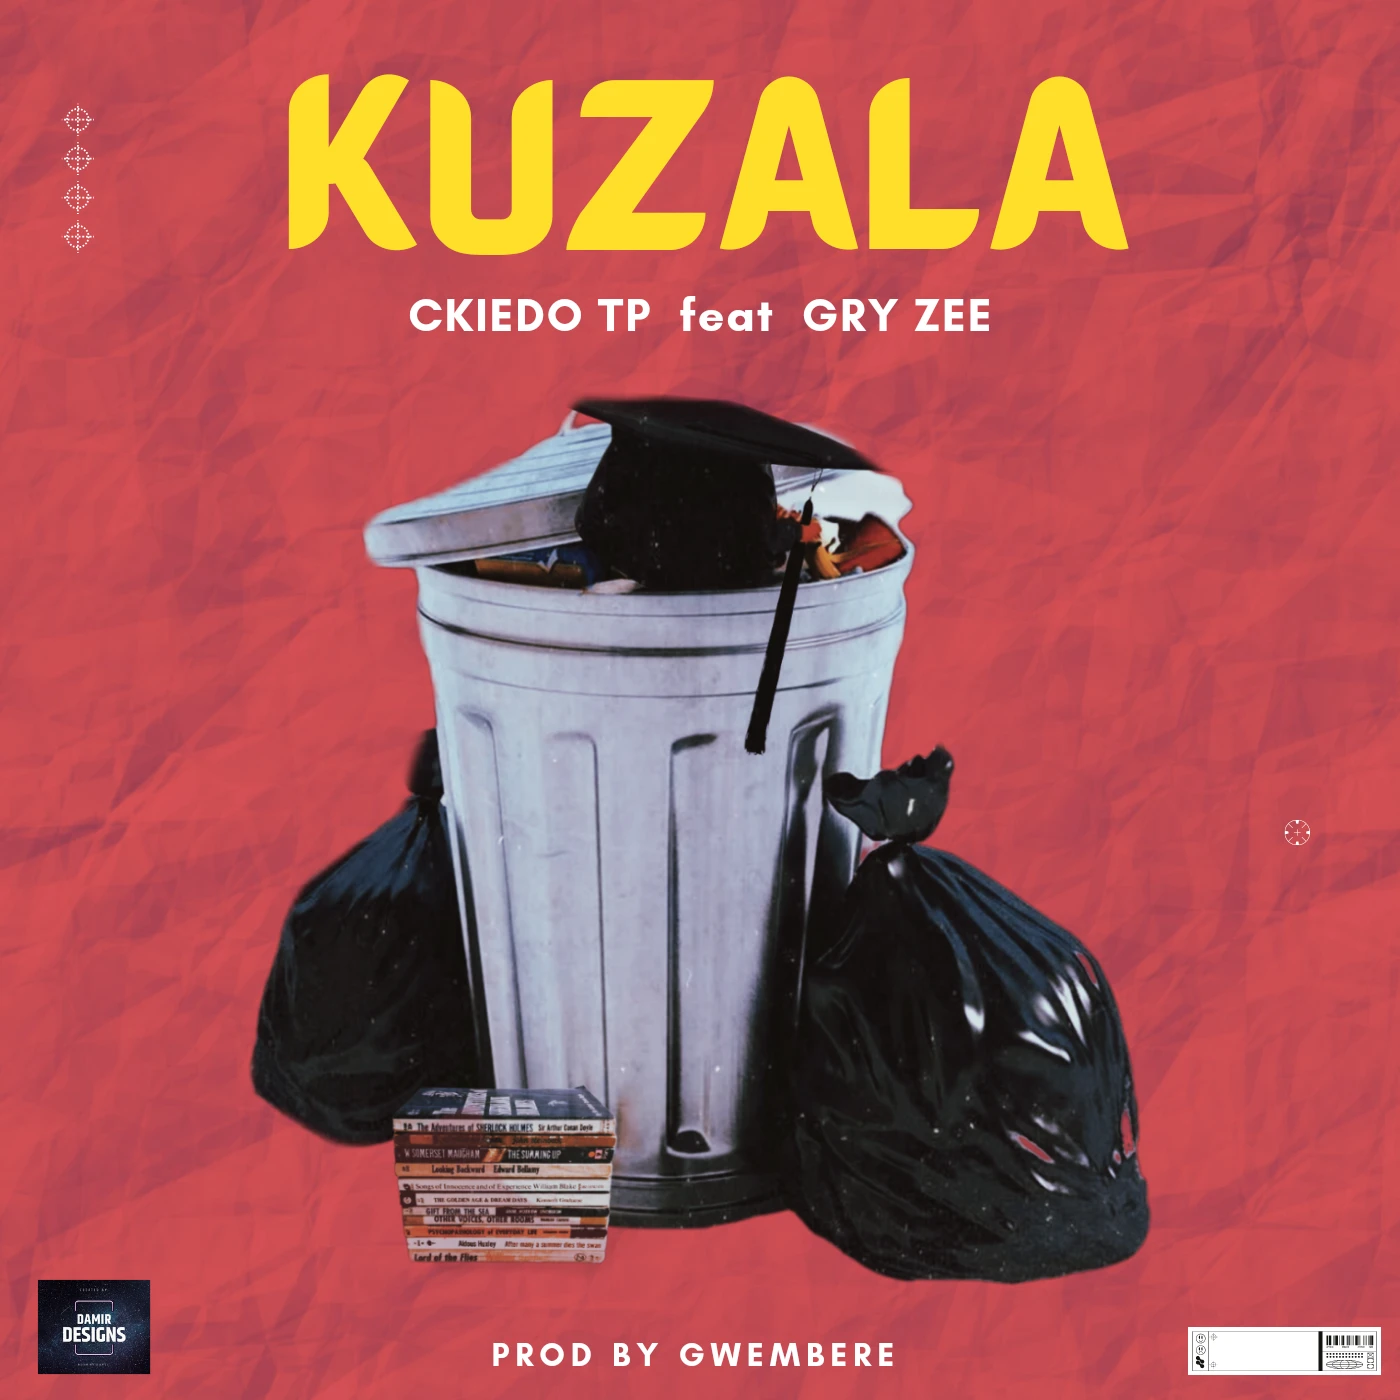 kuzala-feat-gry-zee-ckiedo-tp-Just Malawi Music